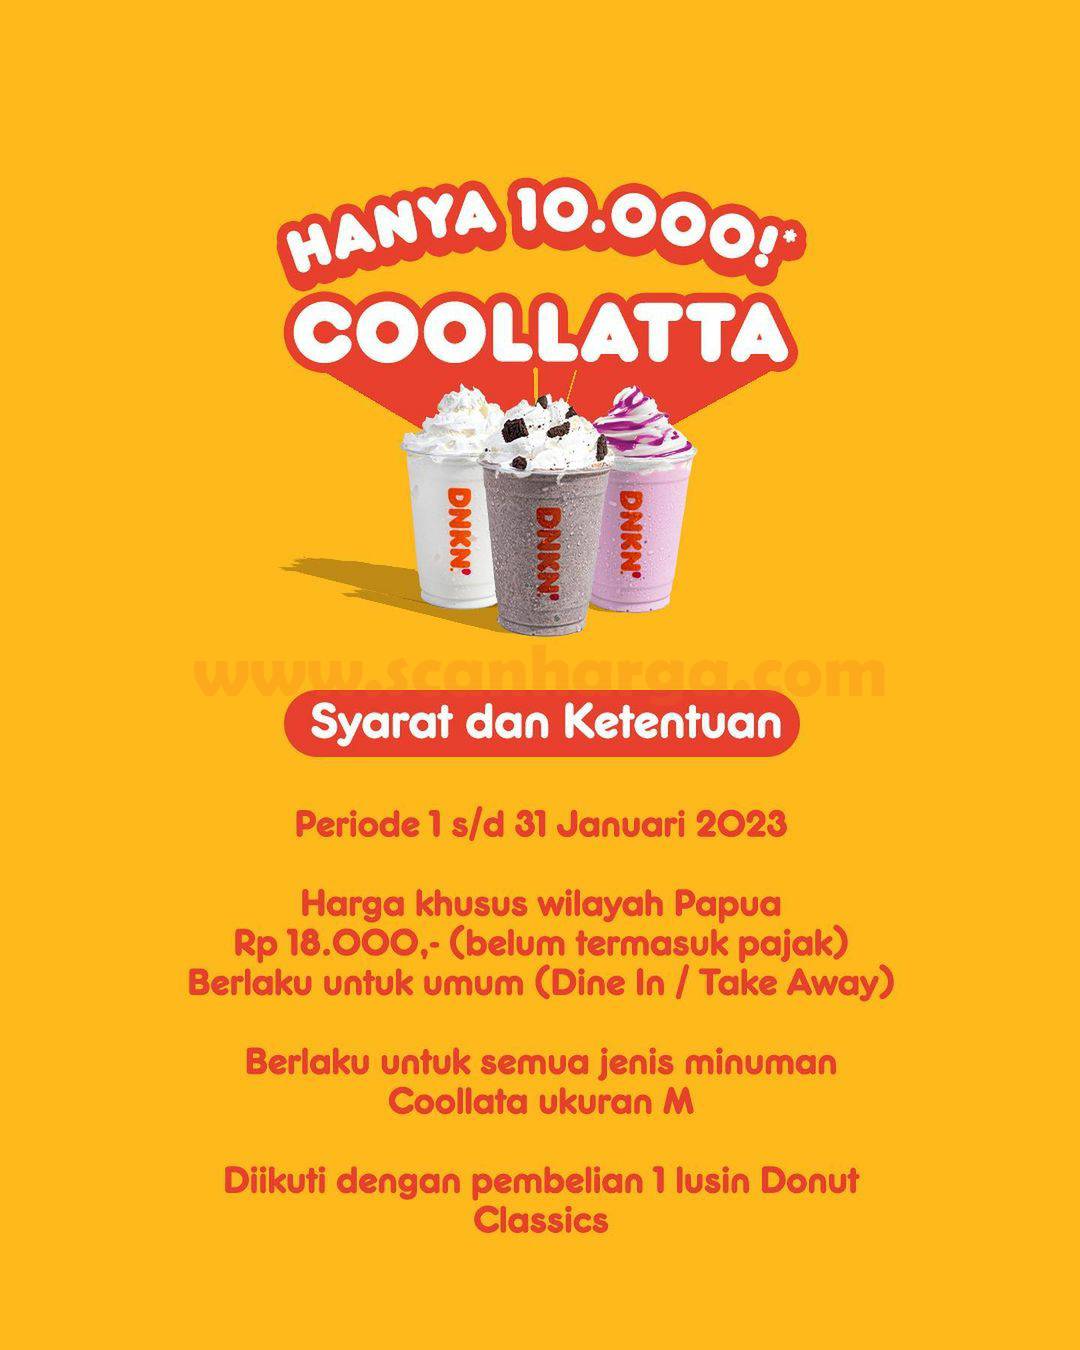 Promo DUNKIN DONUTS Coolatta Hanya Rp 10.000